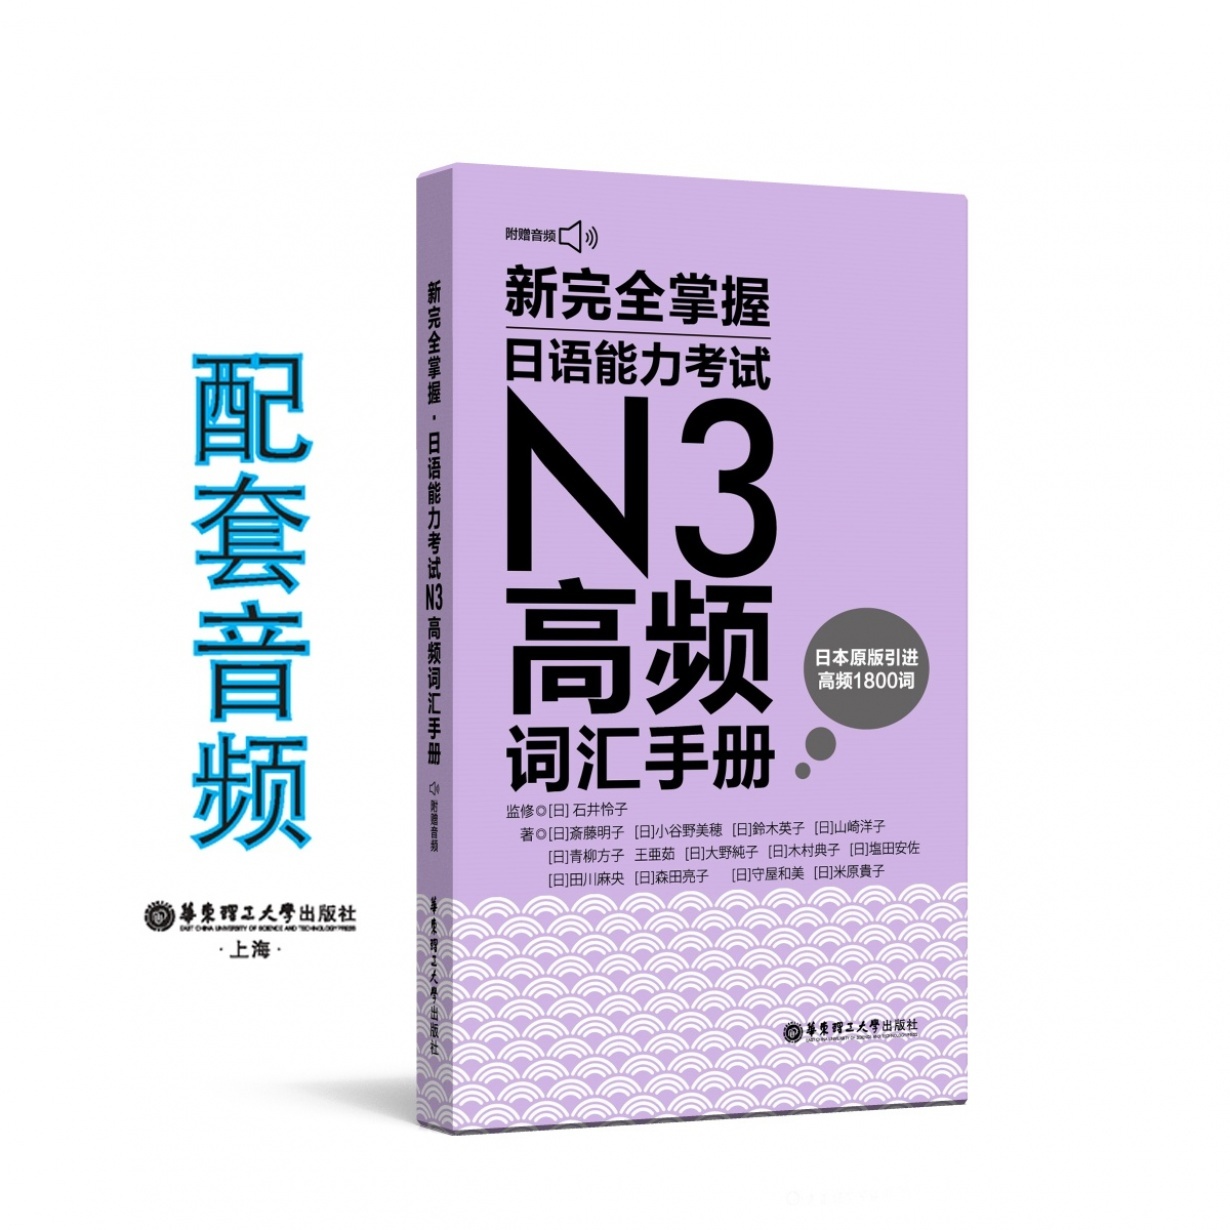 新完全掌握.日语能力考试N3高频词汇手册.mp3